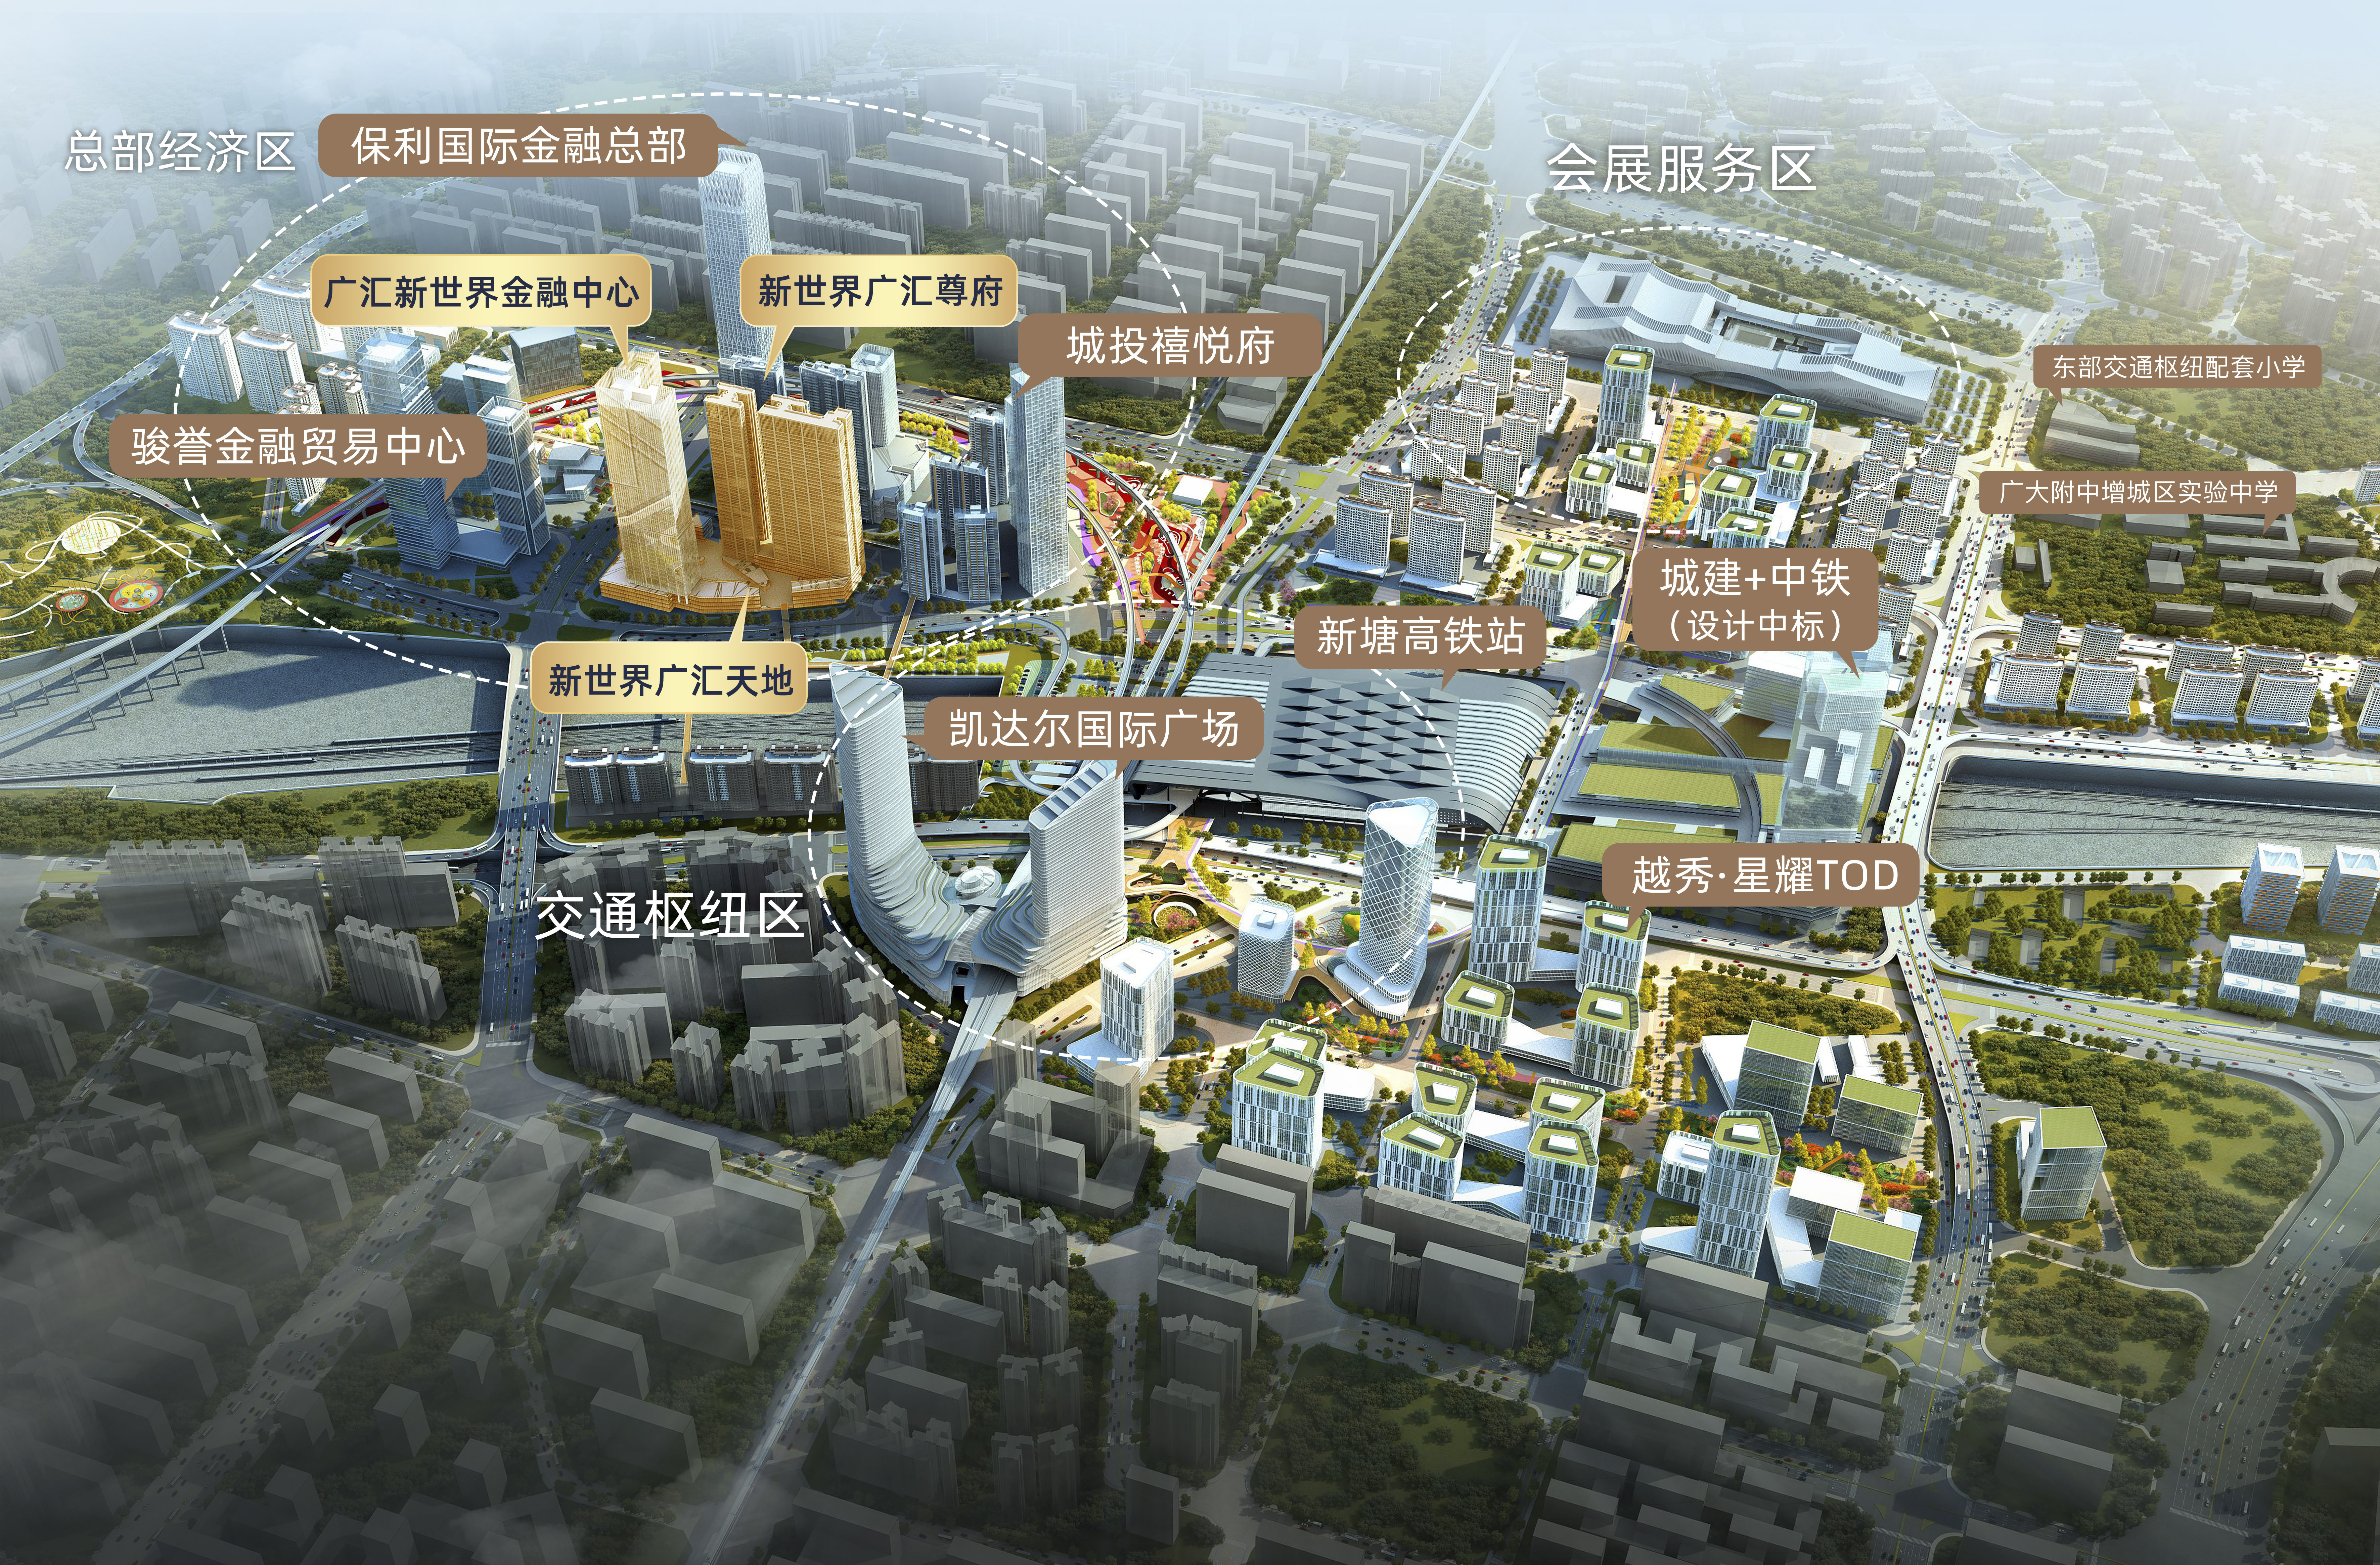 新世界广汇尊府，硬实力满足塔尖人群的挑剔眼光 引领广州东部中心生活远见